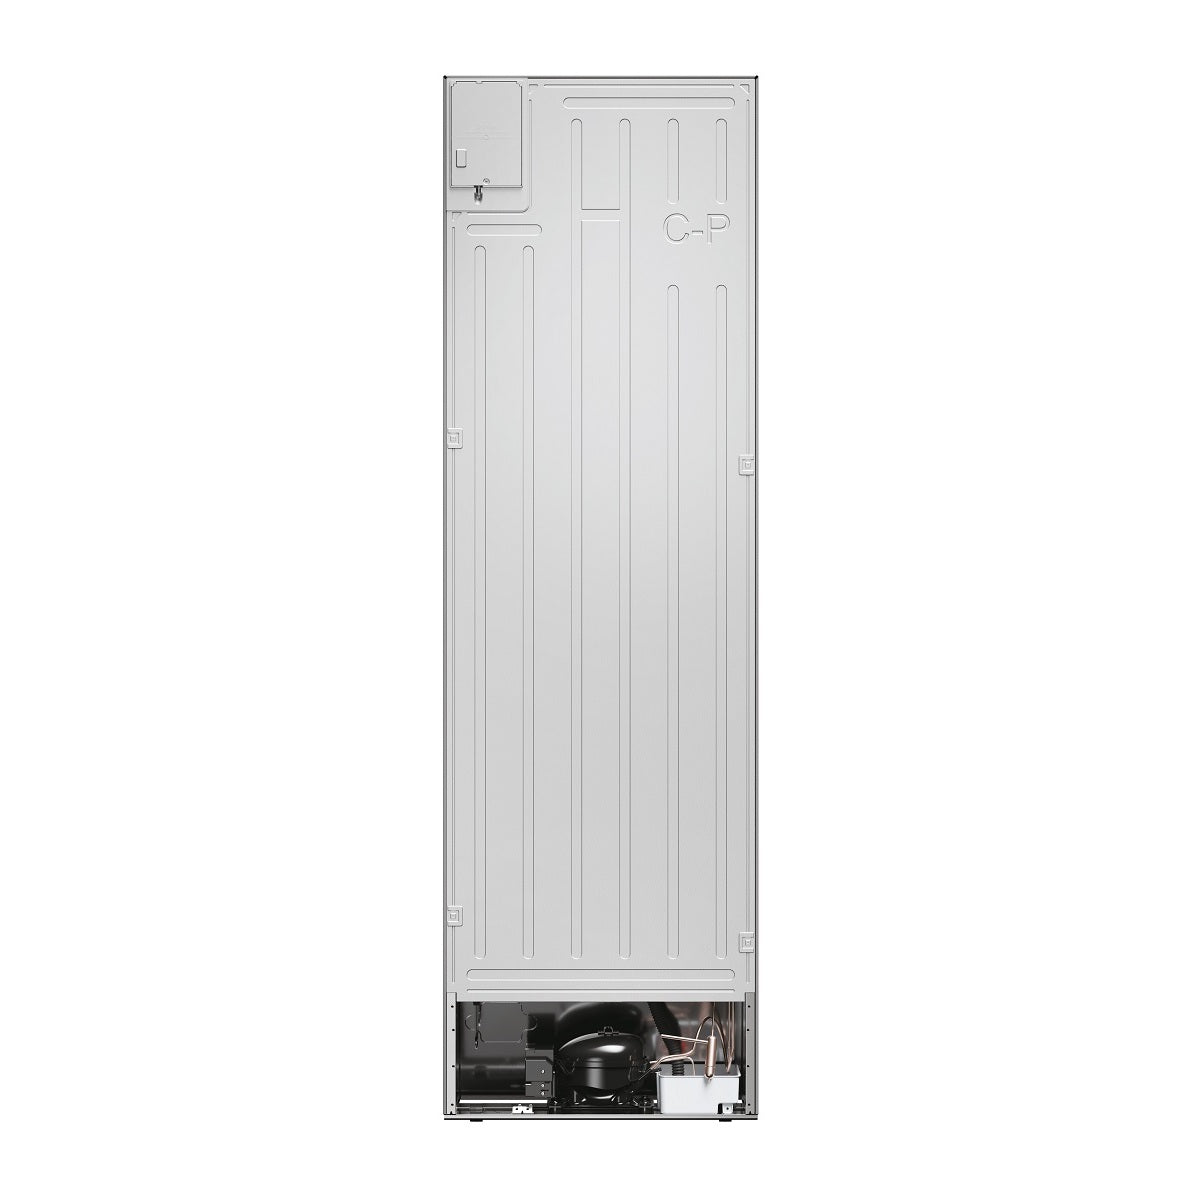 Kombinovaná chladnička s mrazničkou dole Haier HDW5620CNPW